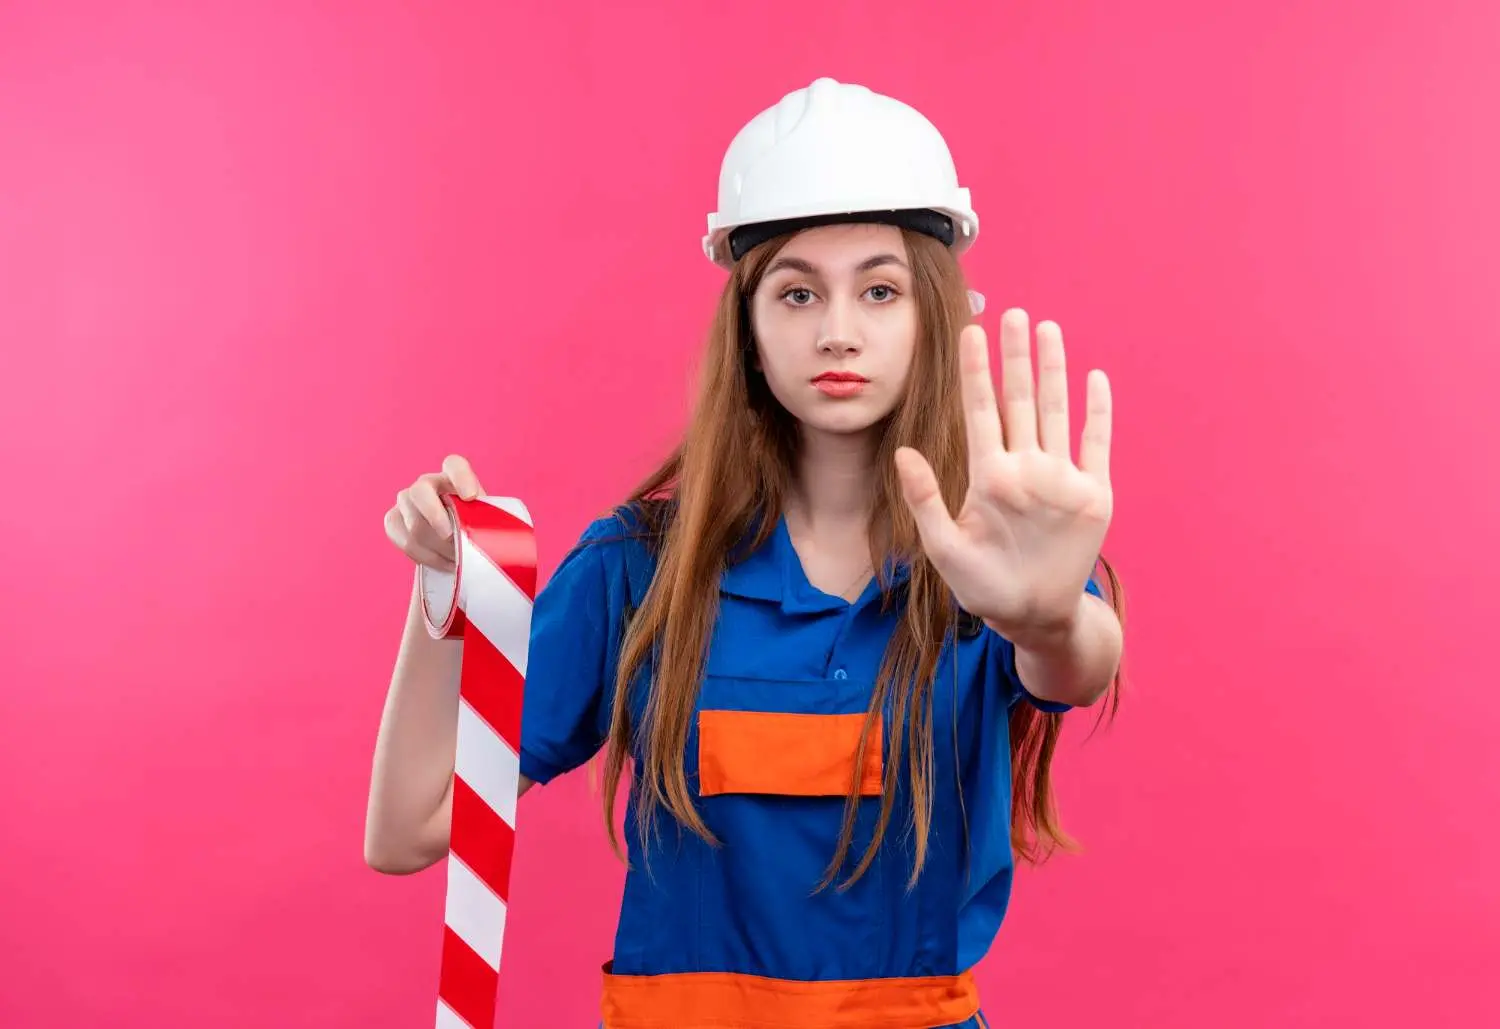 Sicurezza sul lavoro: quando cambiare l'elmetto protettivo? – Cope